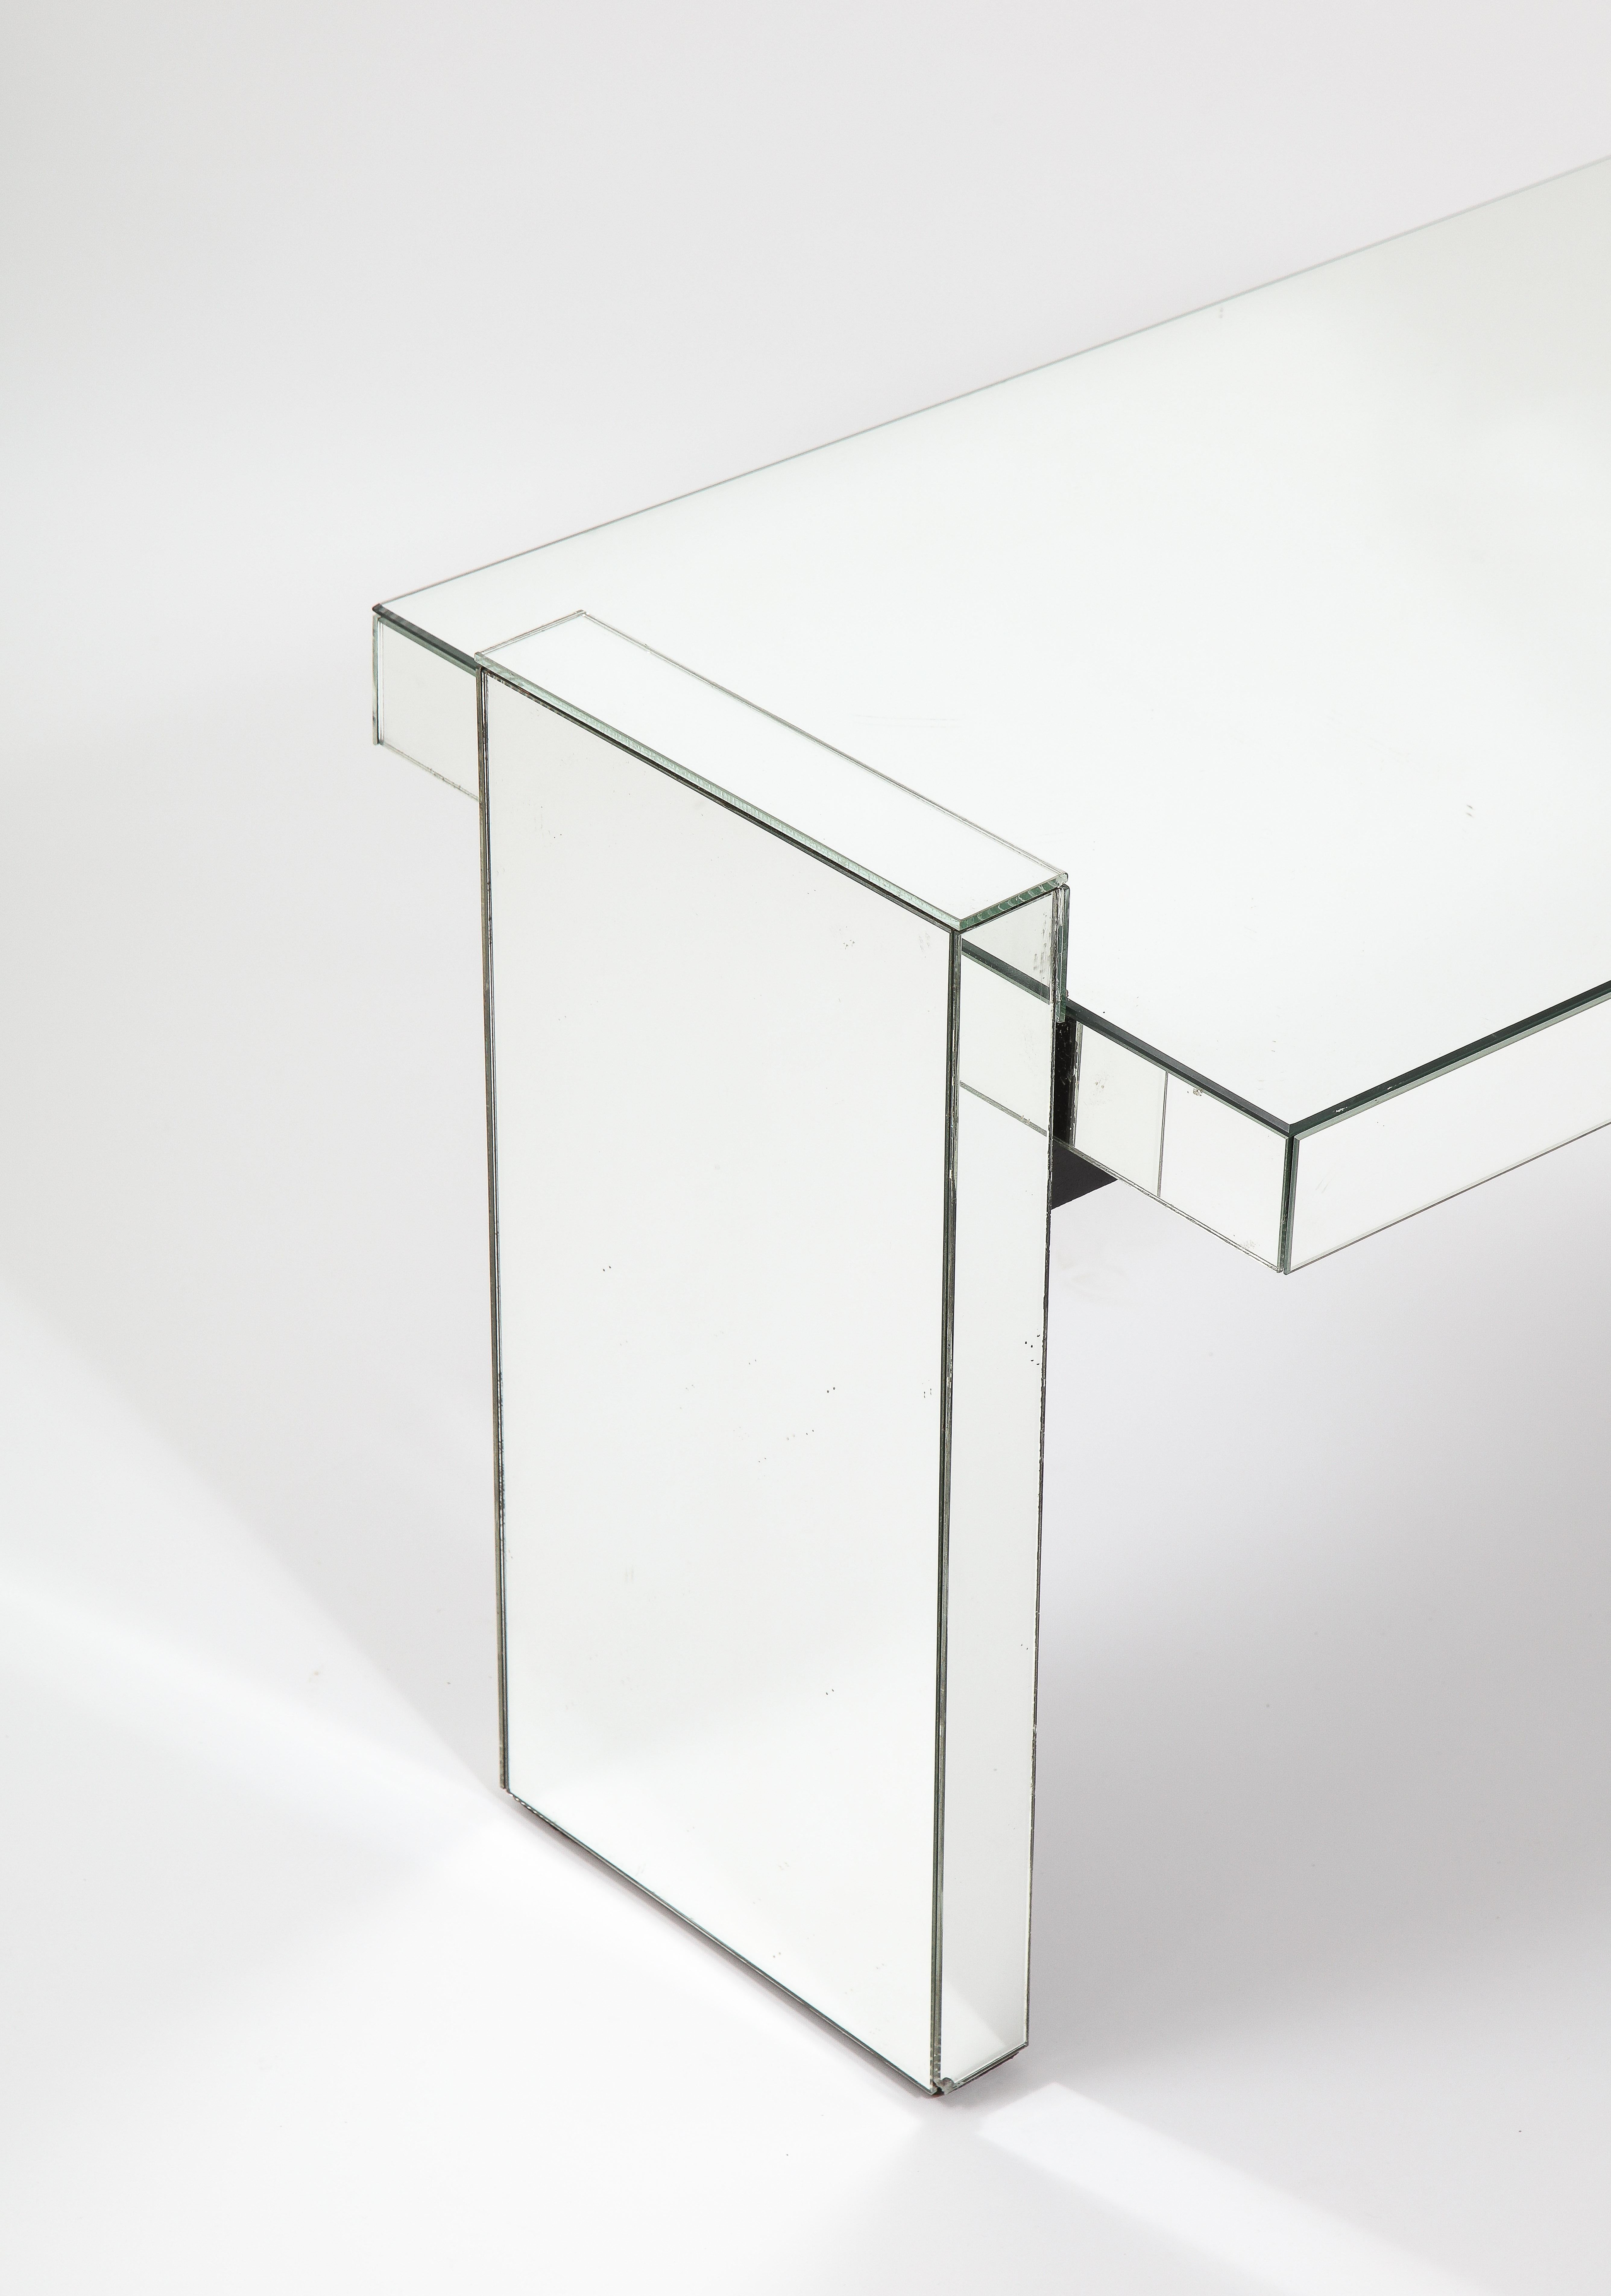 Une table en miroir de Jacques Artistics dans le style classique de l'artiste, une forme simple mais forte revêtue de miroir.